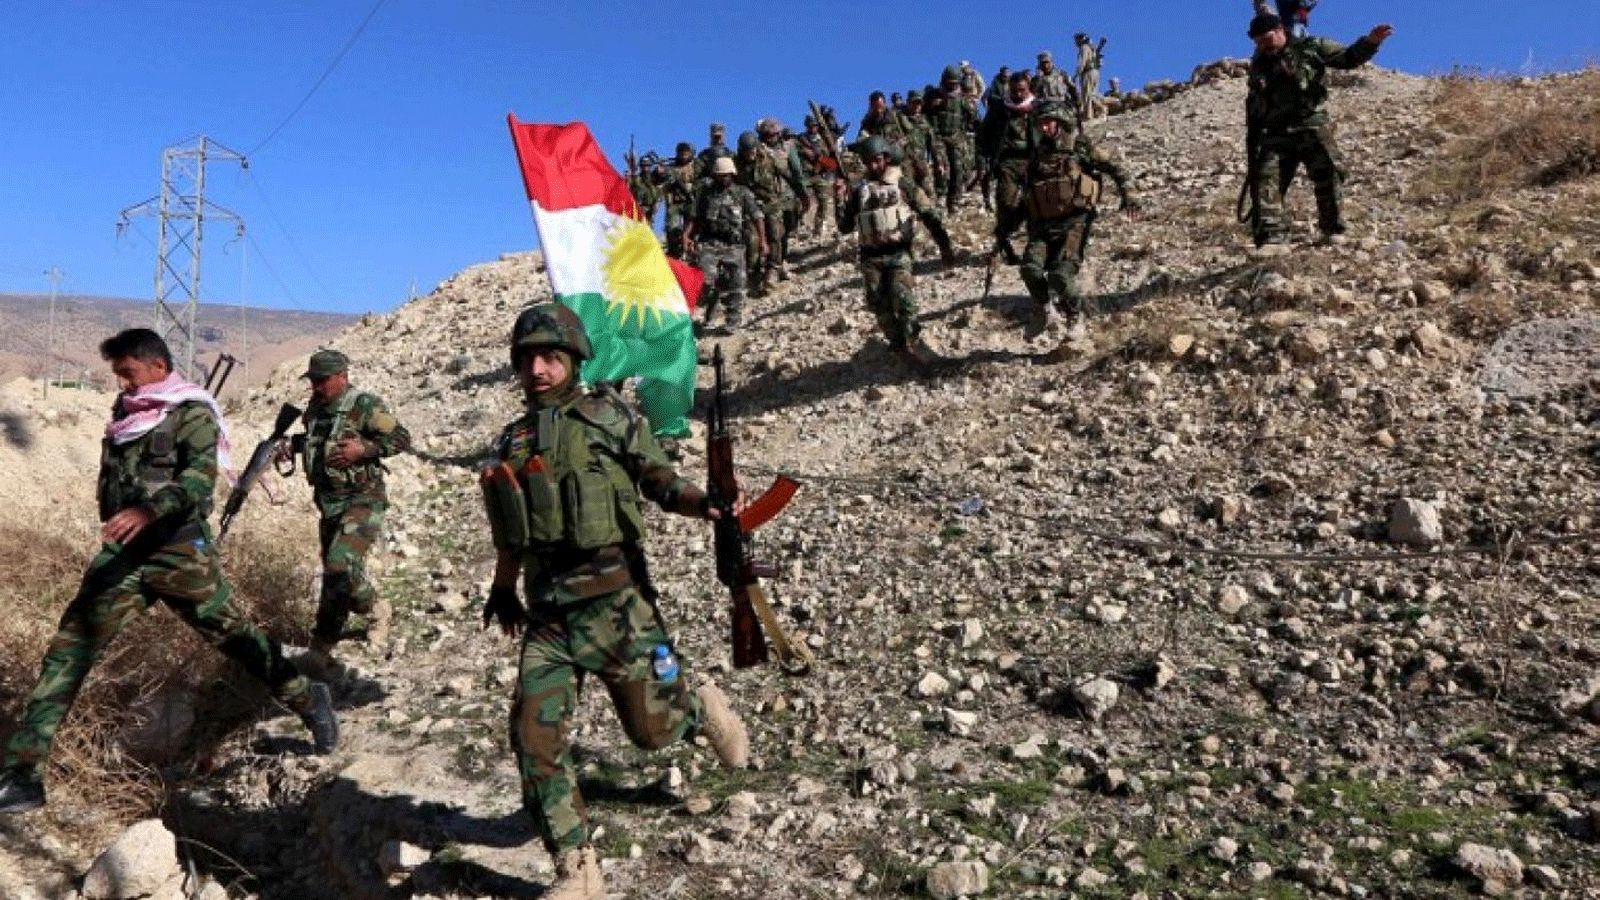 مقاتلو البشمركة والإيزيديون، في الصورة هنا في تشرين الثاني\ نوفمبر 2015، كانوا متحدين لإجبار داعش على الخروج من سنجار، لكنهم يقاتلون الآن بعضهم البعض